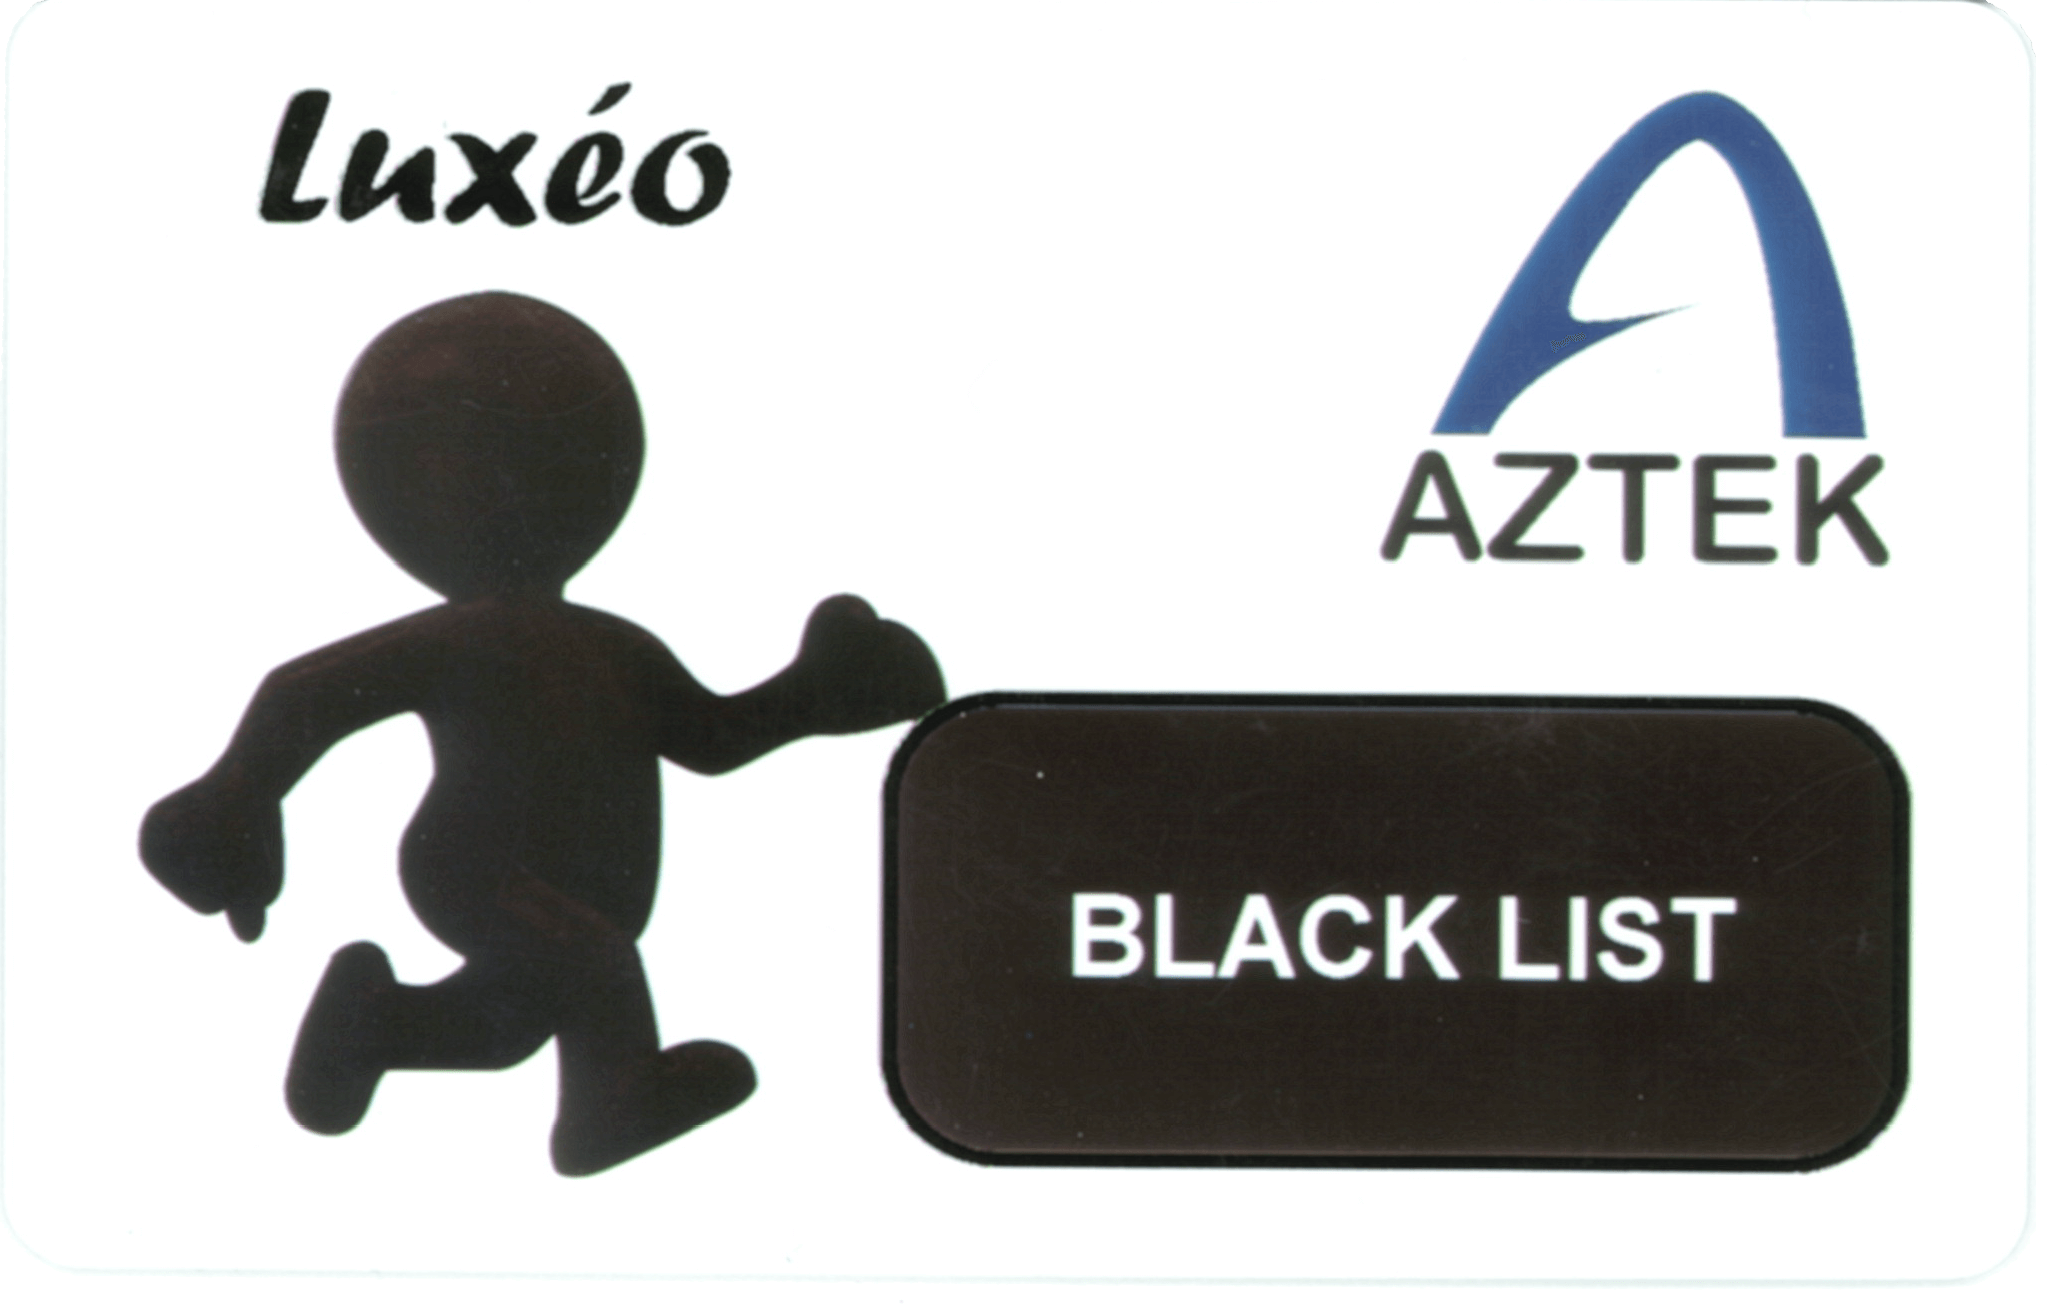 AZTEK Luxeo Schwarze Liste